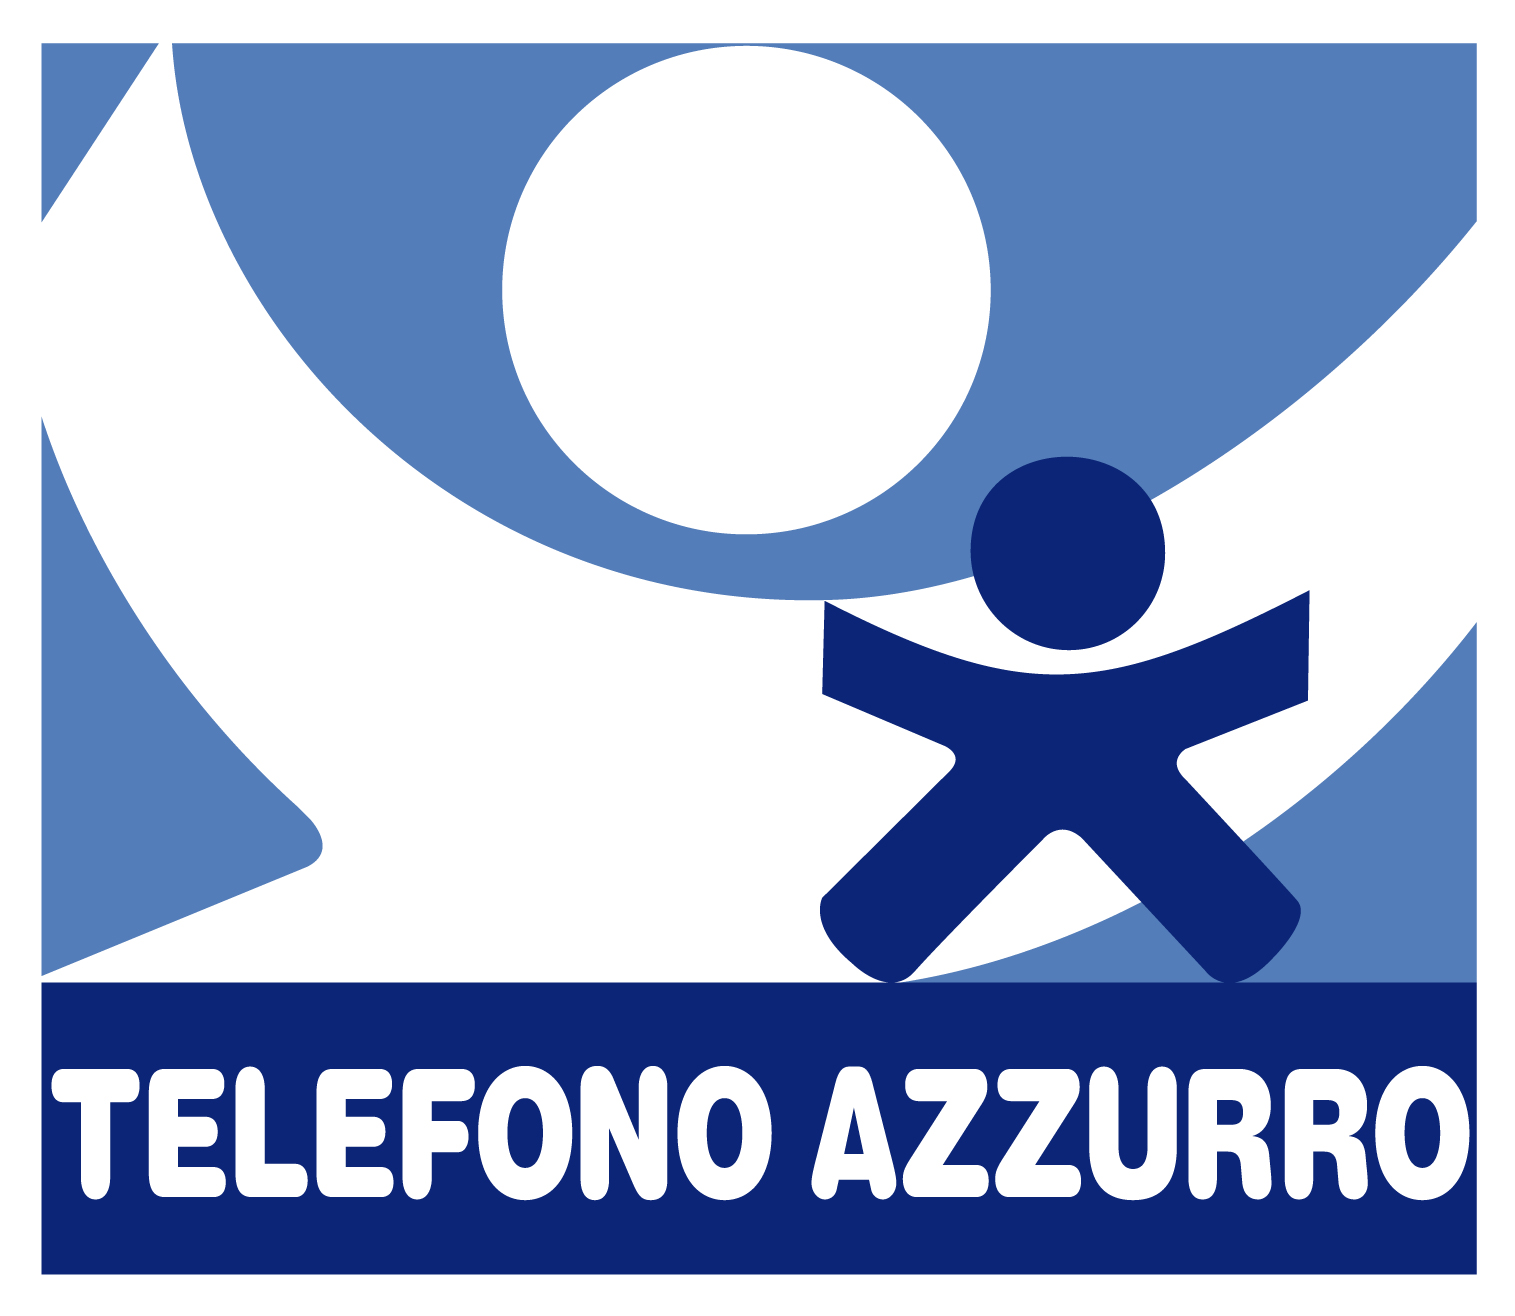 Telefono Azzurro rischia di chiudere per i tagli ai fondi fatti dal governo Europeo e Italiano